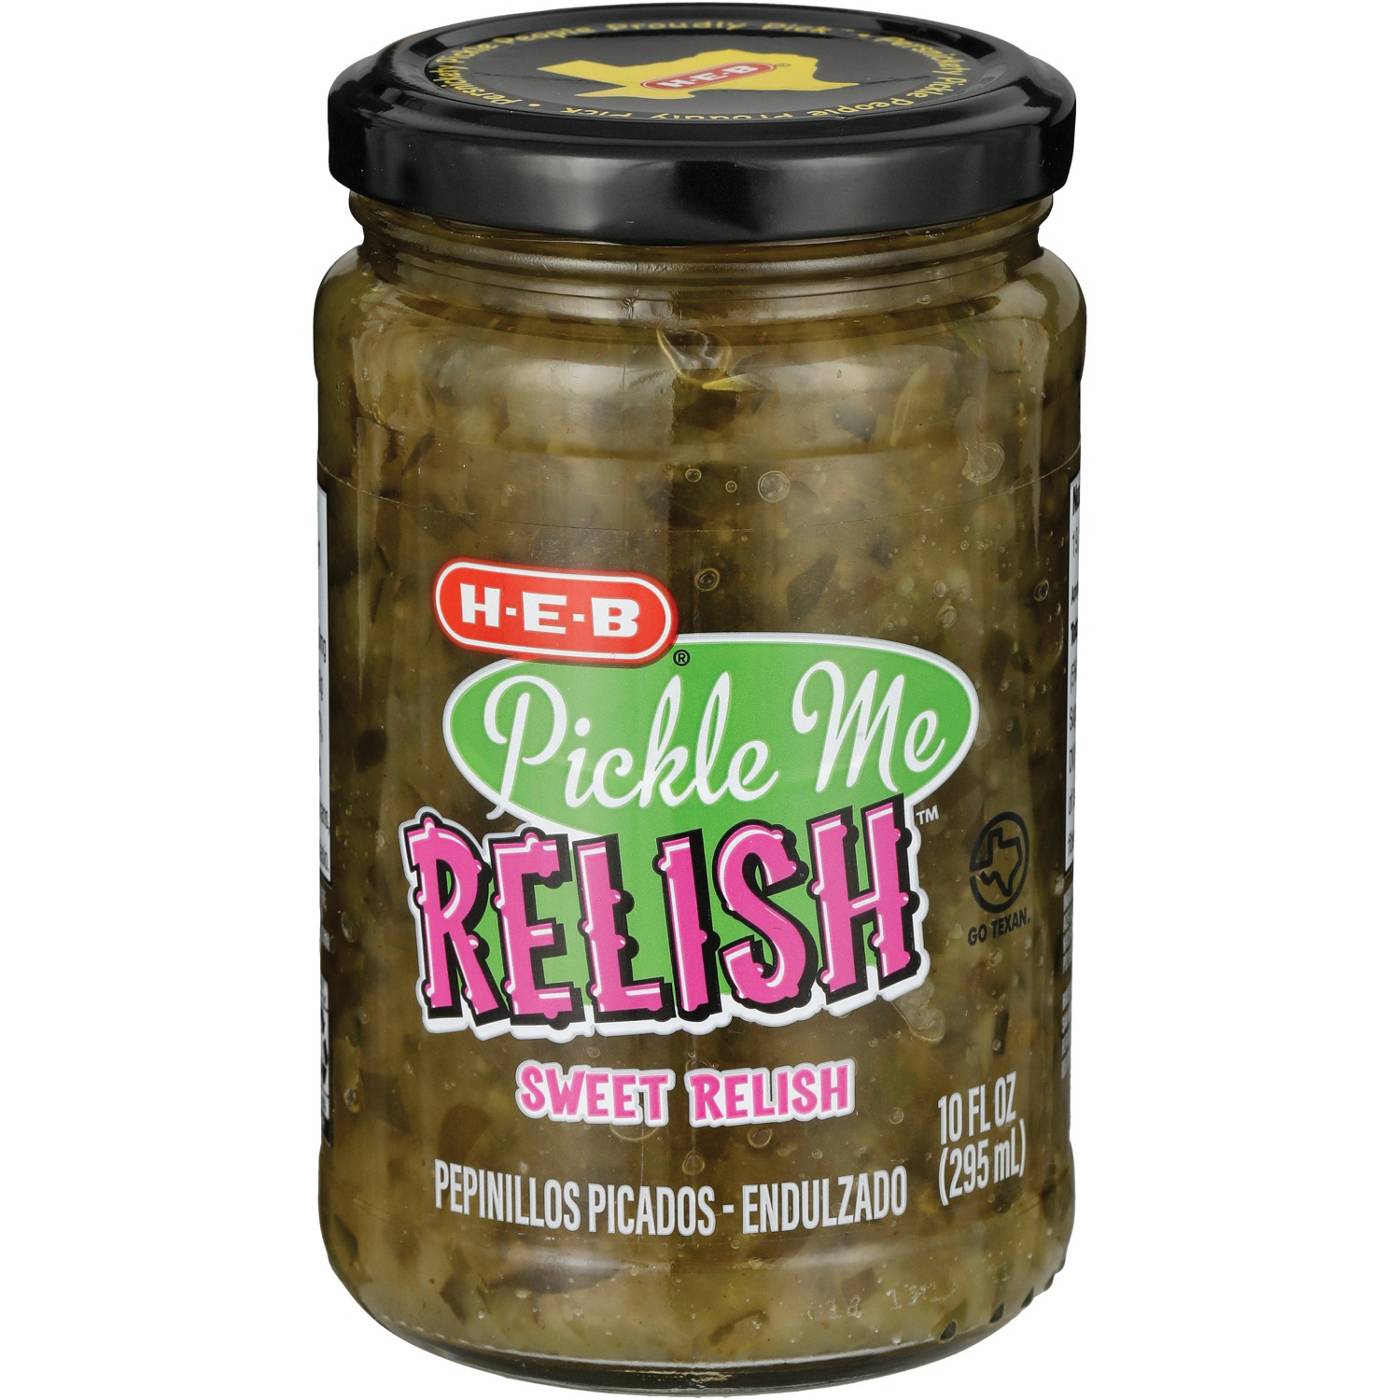 H-E-B Pickle Me Relish Sweet Relish; image 2 of 2